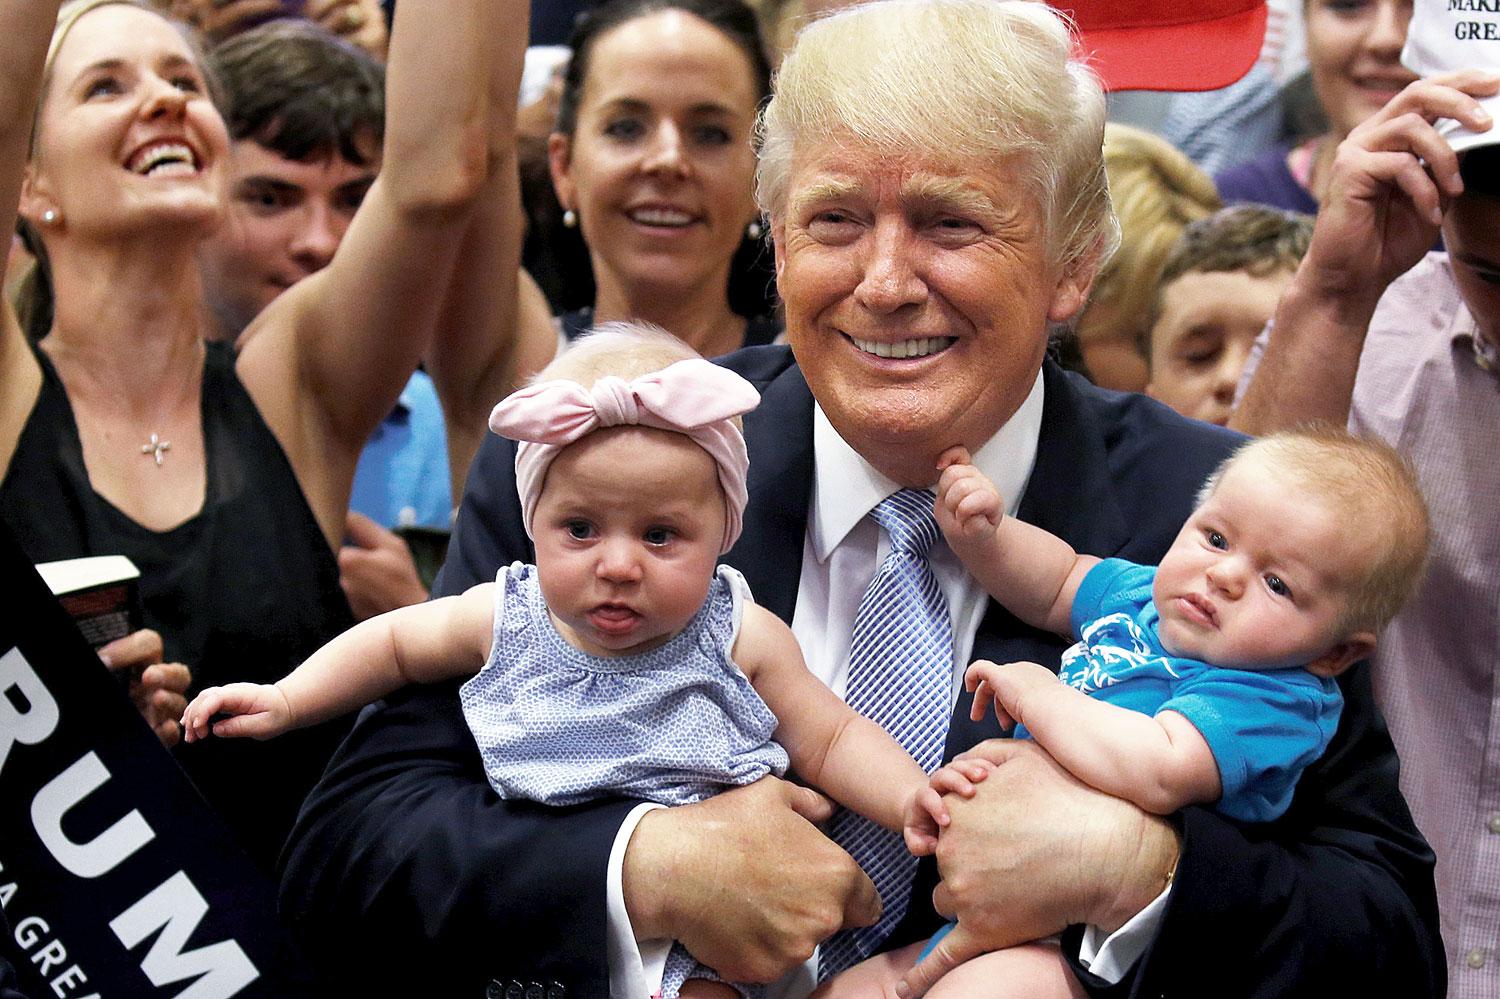 Vajon az segít Trump zuhanó népszerűségén, ha kisbabákat ölelget?